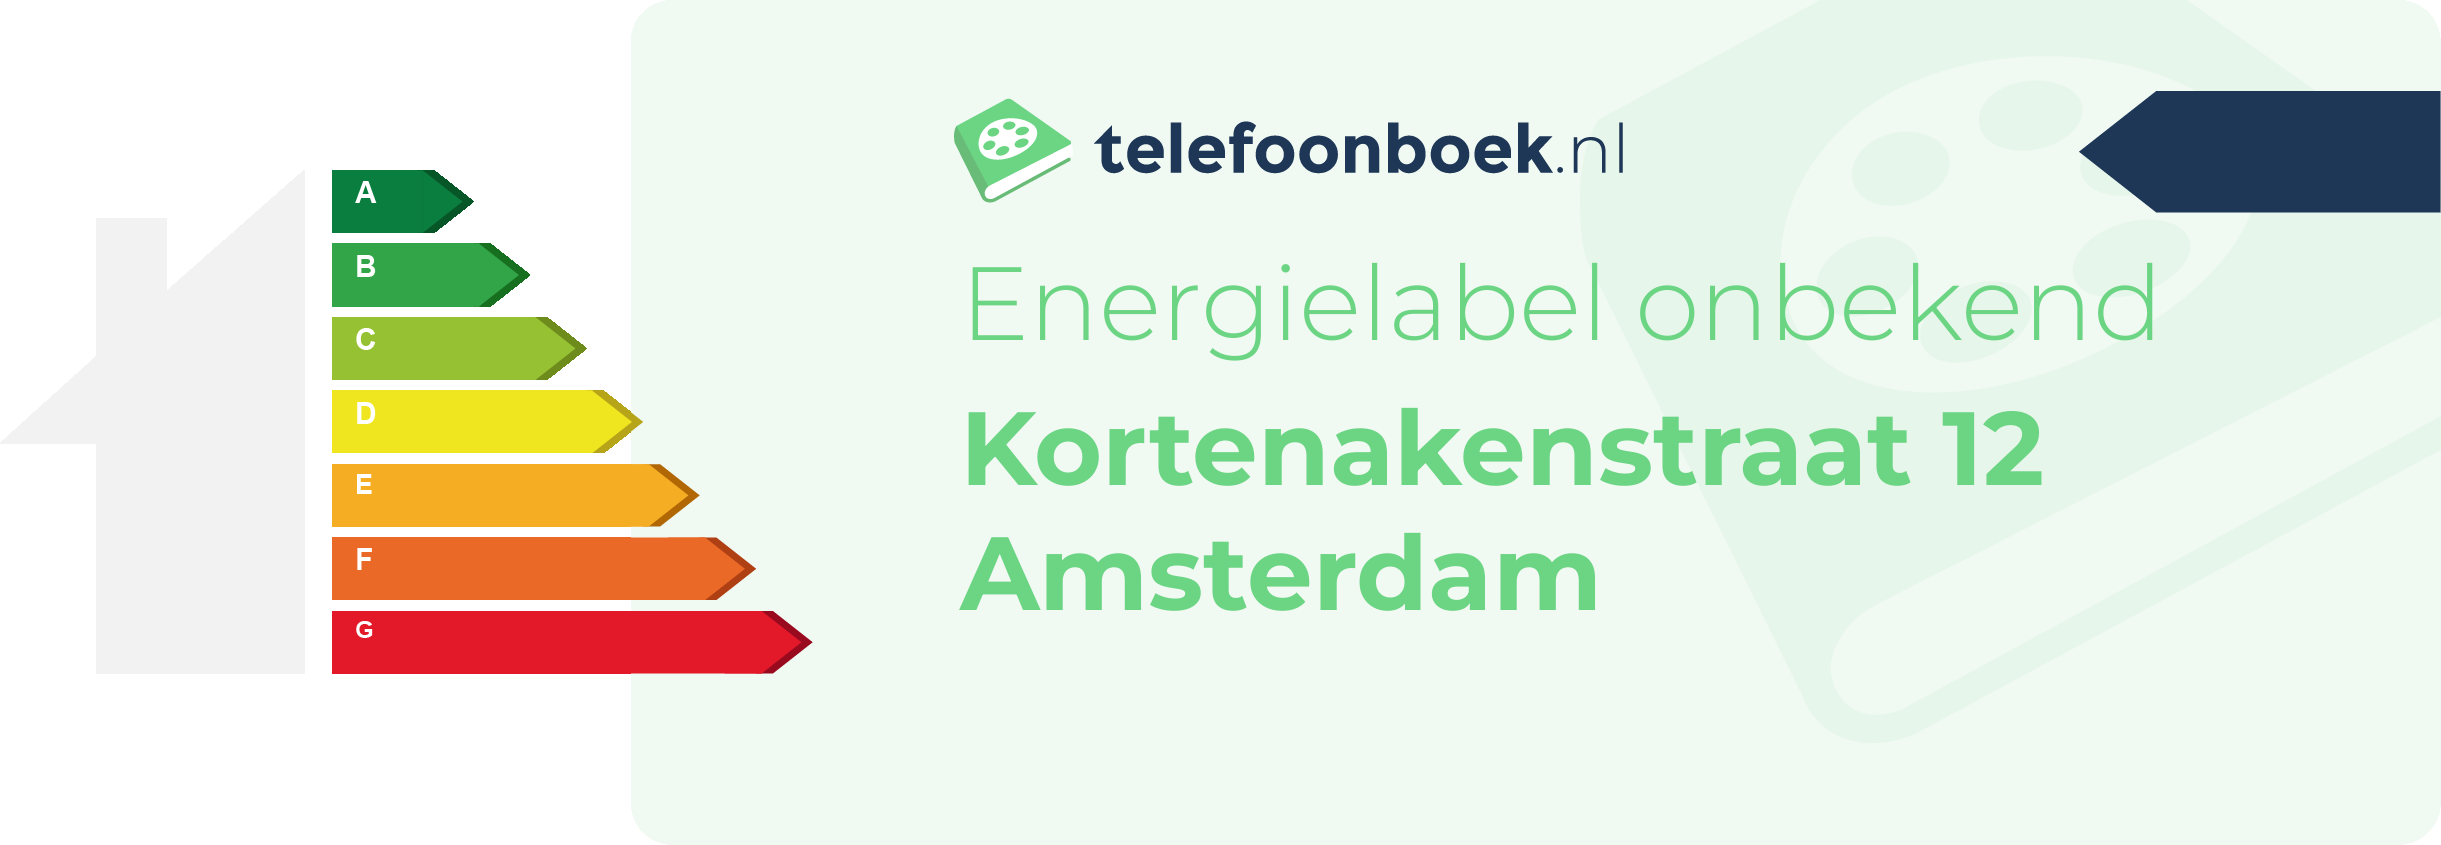 Energielabel Kortenakenstraat 12 Amsterdam